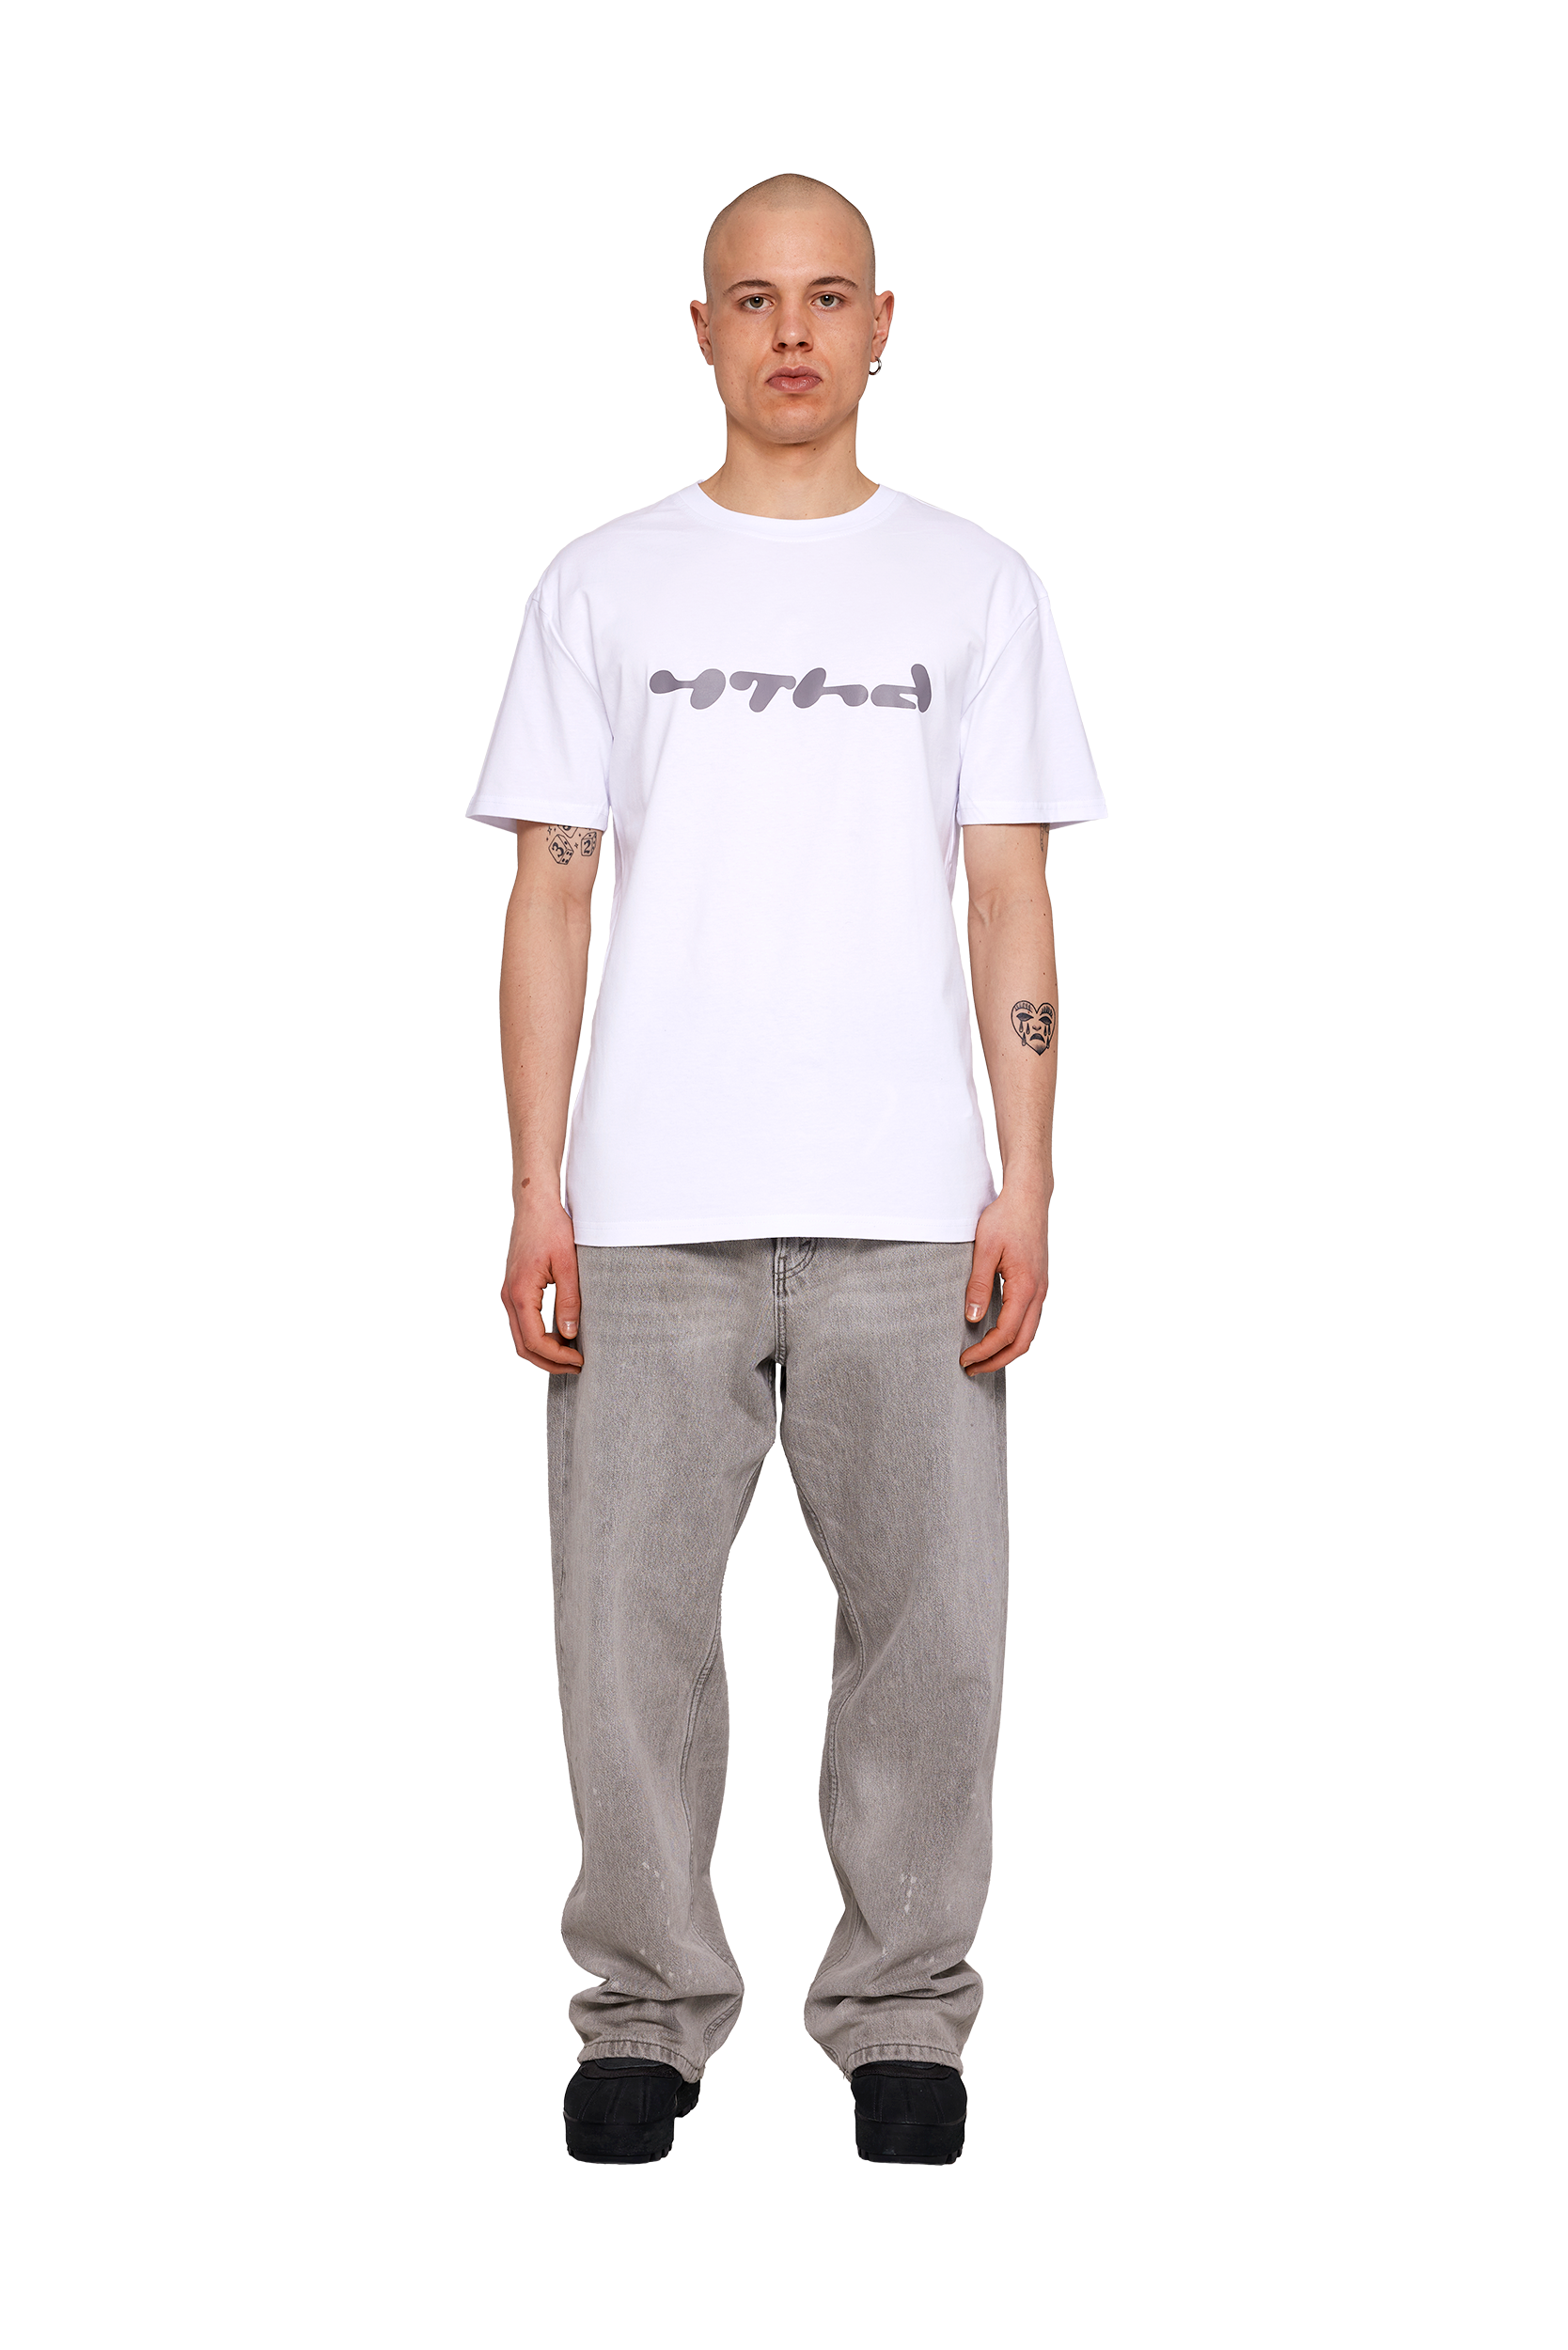 Aqua Shirt - Grey